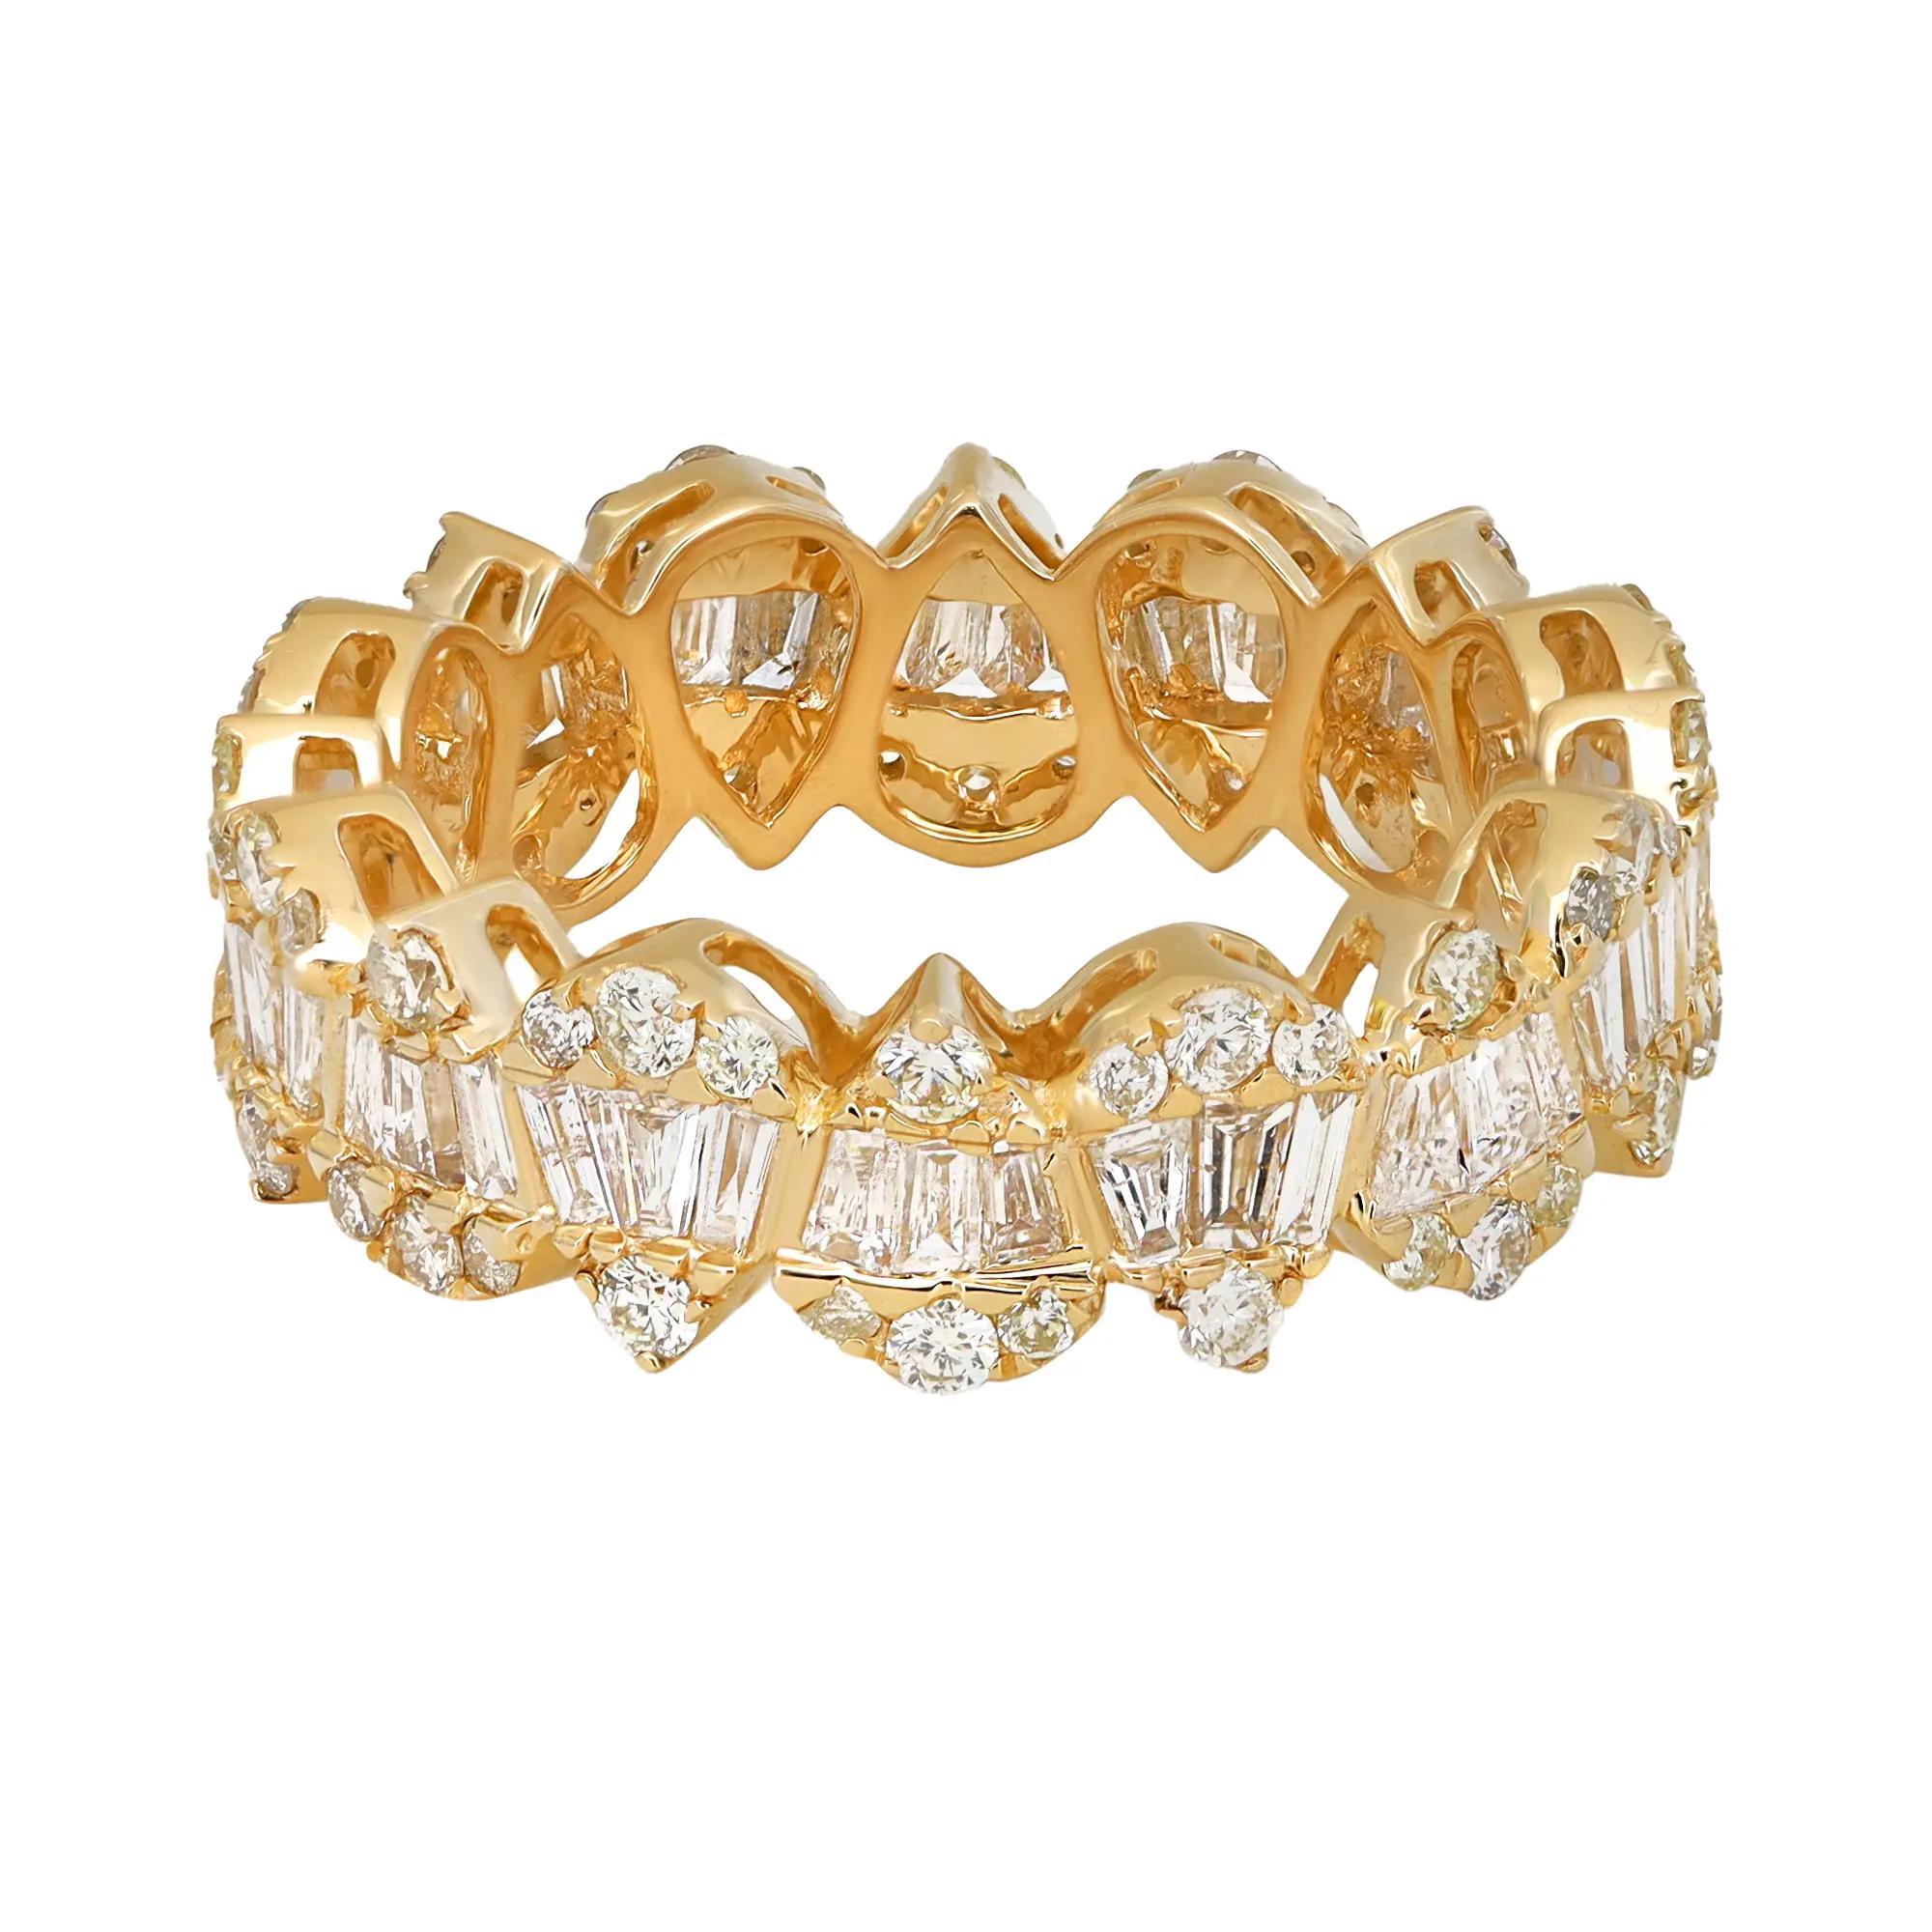 Dieser zeitlose und stilvolle Diamantring ist aus 14 Karat Gelbgold gefertigt und verfügt über einen Baguetteschliff und rundgeschliffene Diamanten in Zackenform, die in einem birnenförmigen Design über das gesamte Ringband verteilt sind.